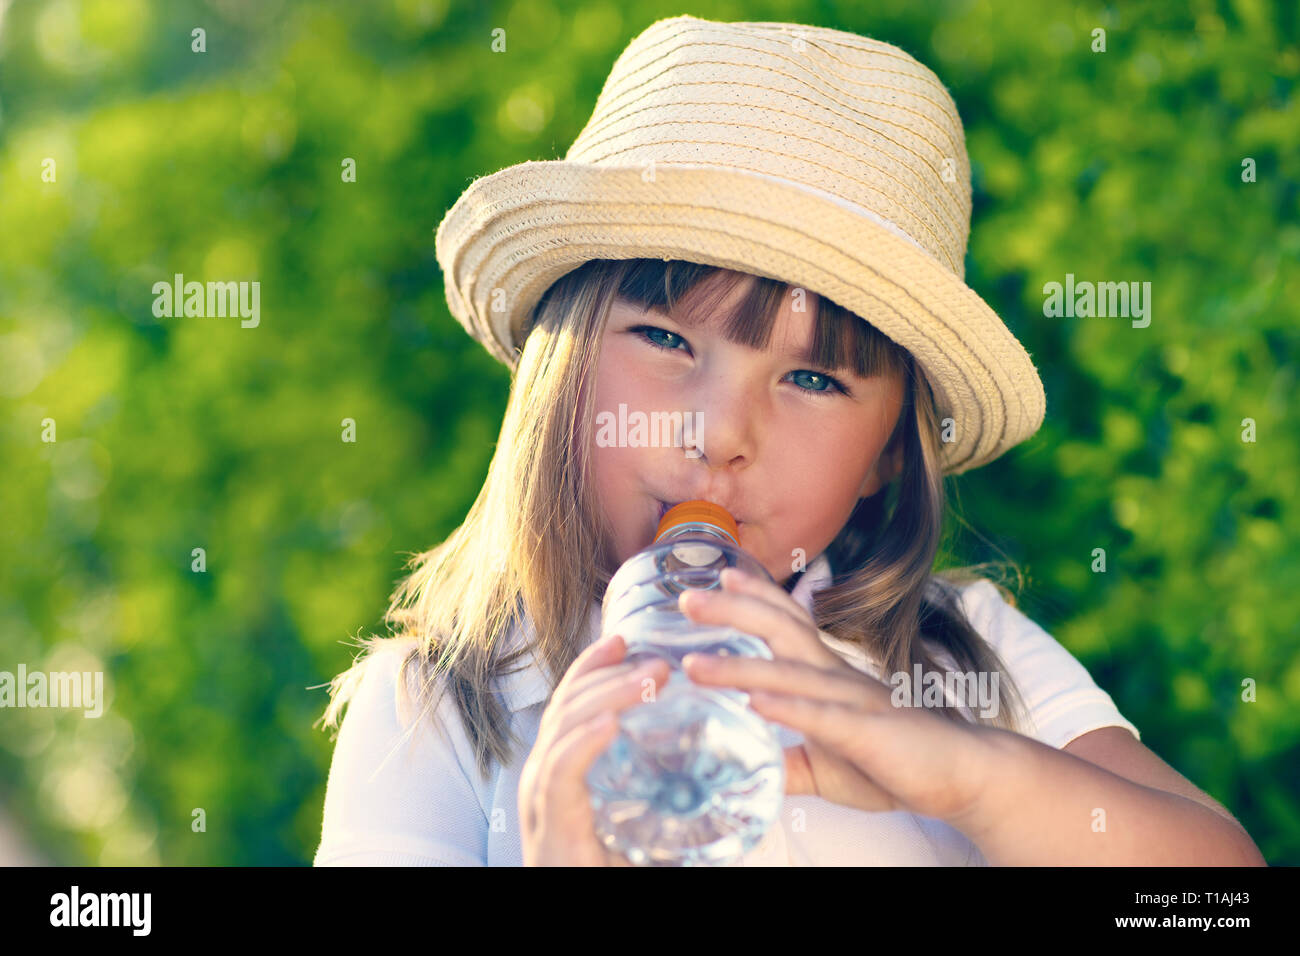 Bébé boit de l'eau à partir de la bouteille. Banque D'Images